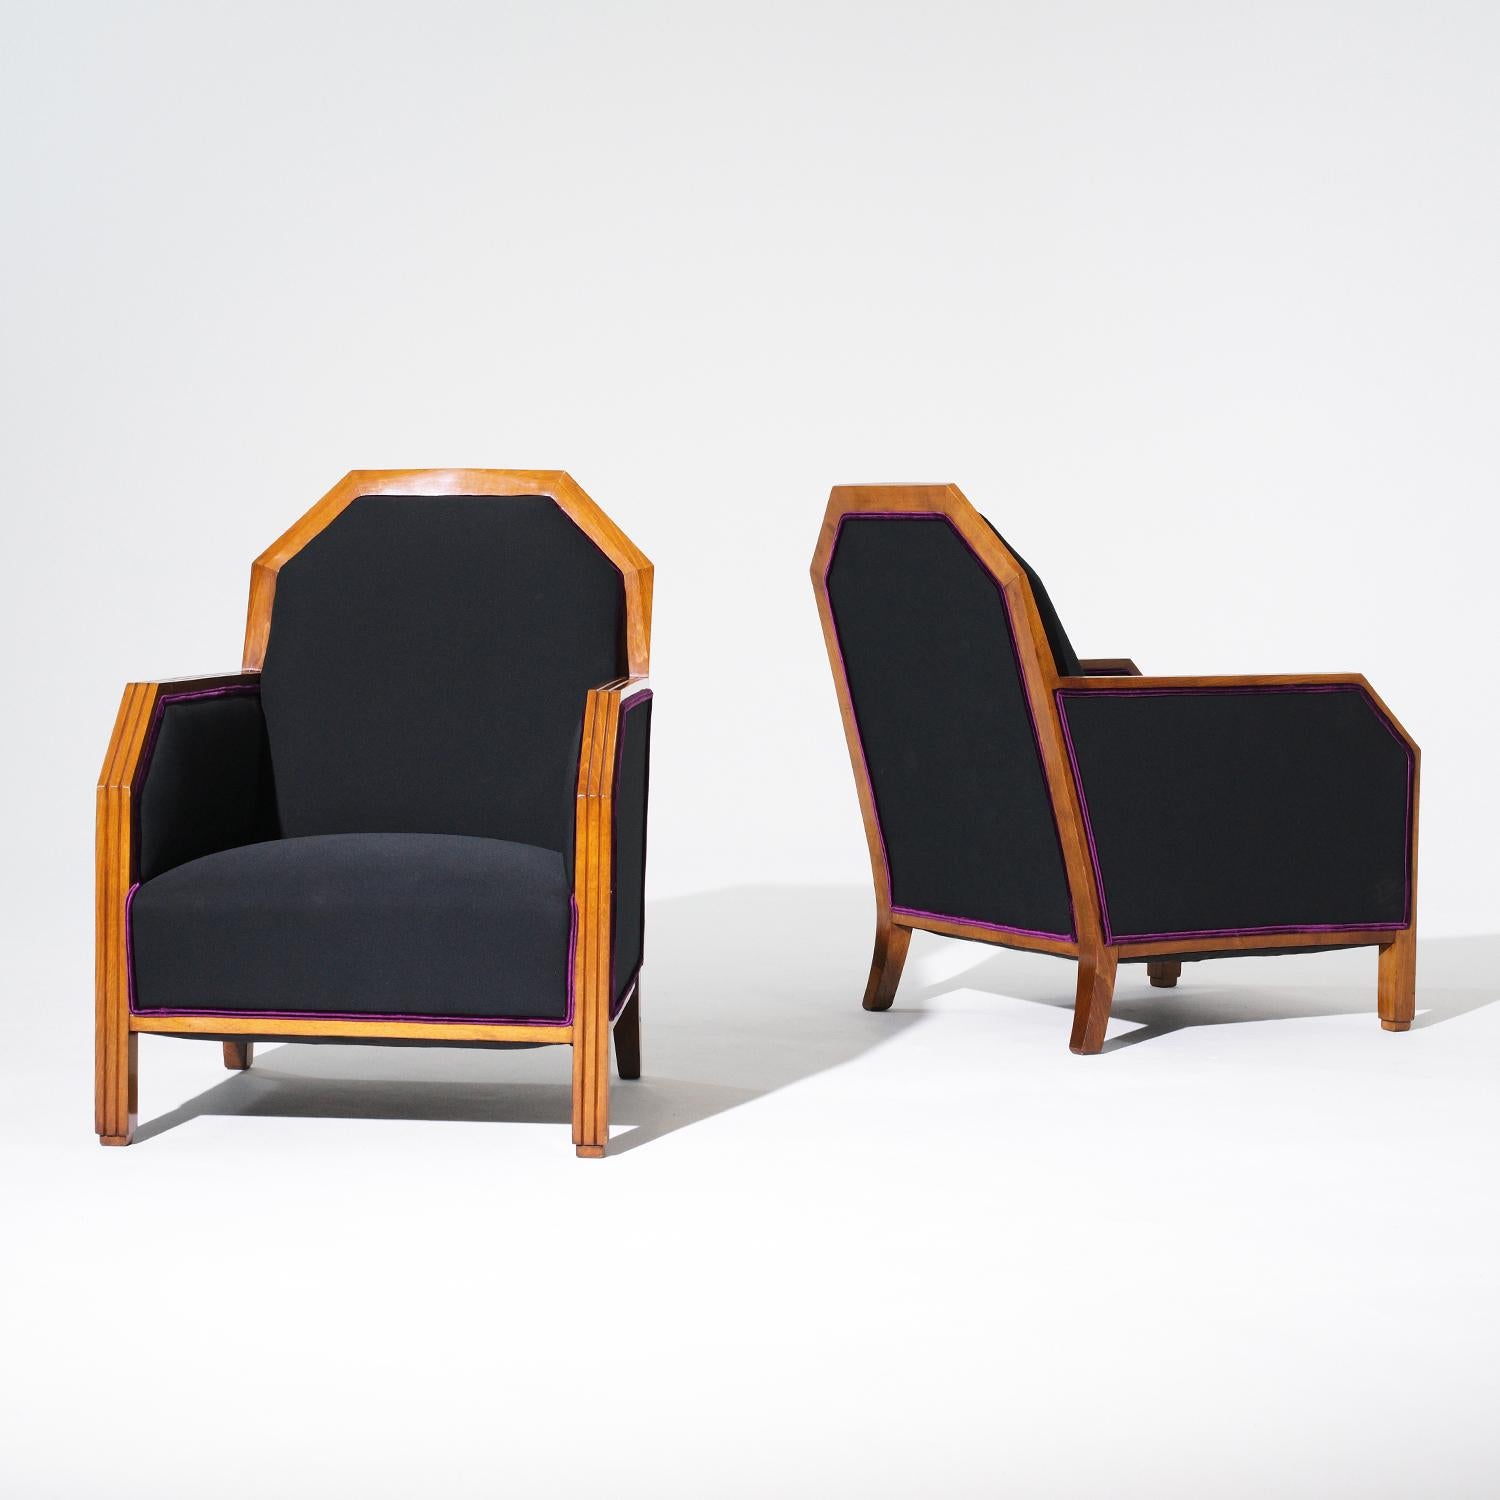 Paire de fauteuils club Art of Vintage de style Art Deco, recouverts de lin noir. Le cadre est en bois de bouleau teinté, fabriqué à la main et en bon état. Petite tache sur l'une des chaises, due à l'âge. Usure conforme à l'âge et à l'utilisation.